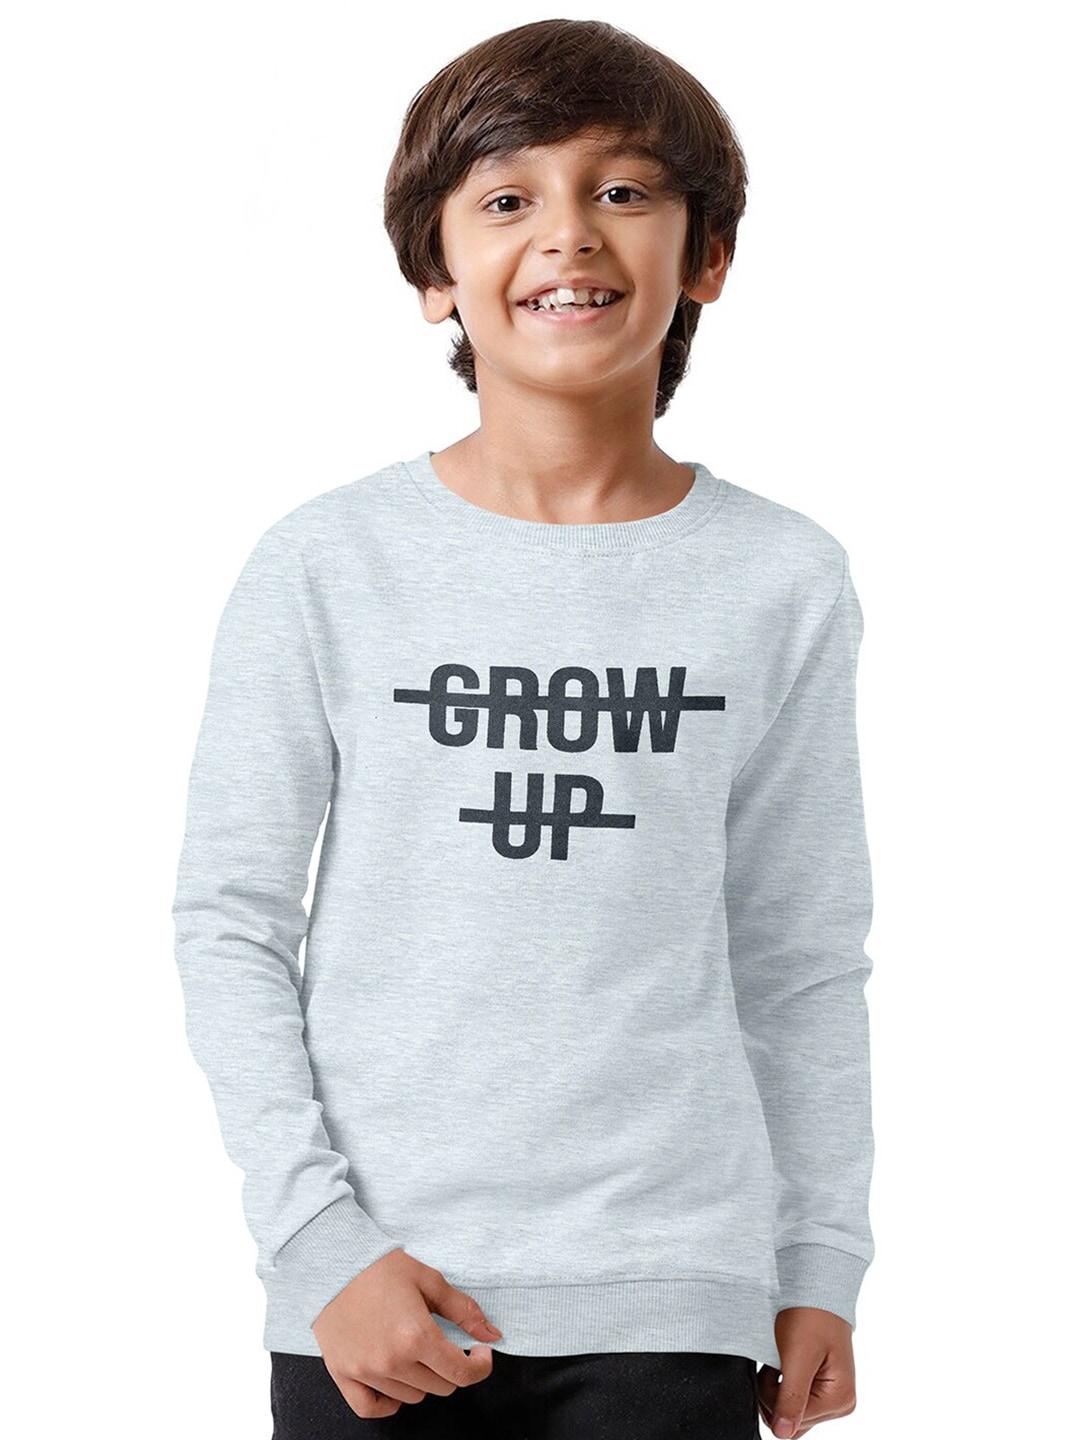 FUNKRAFTS Boys Printed Sweatshirt